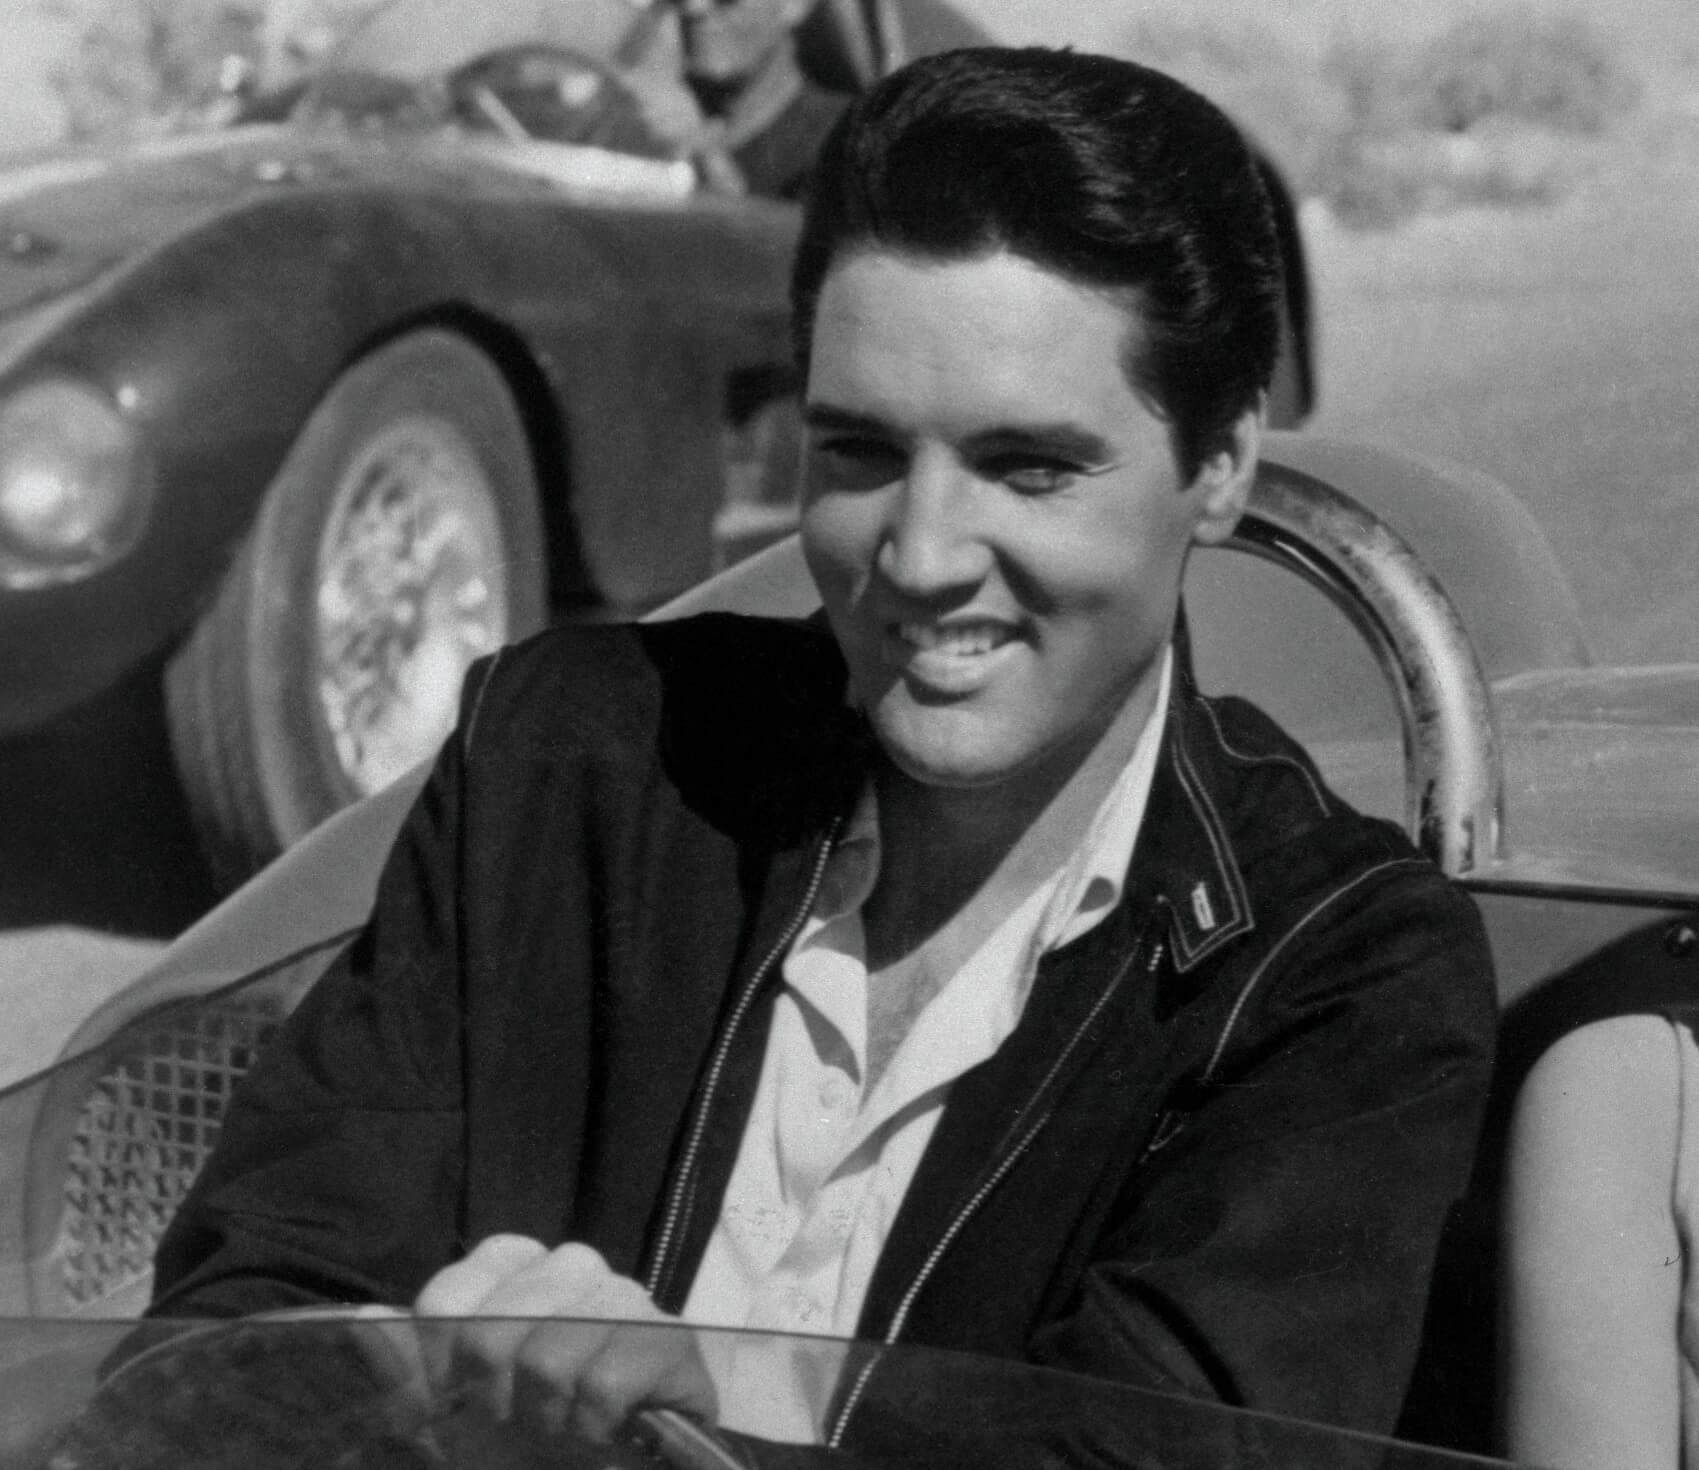 "Viva Las Vegas" singer Elvis Presley in a car